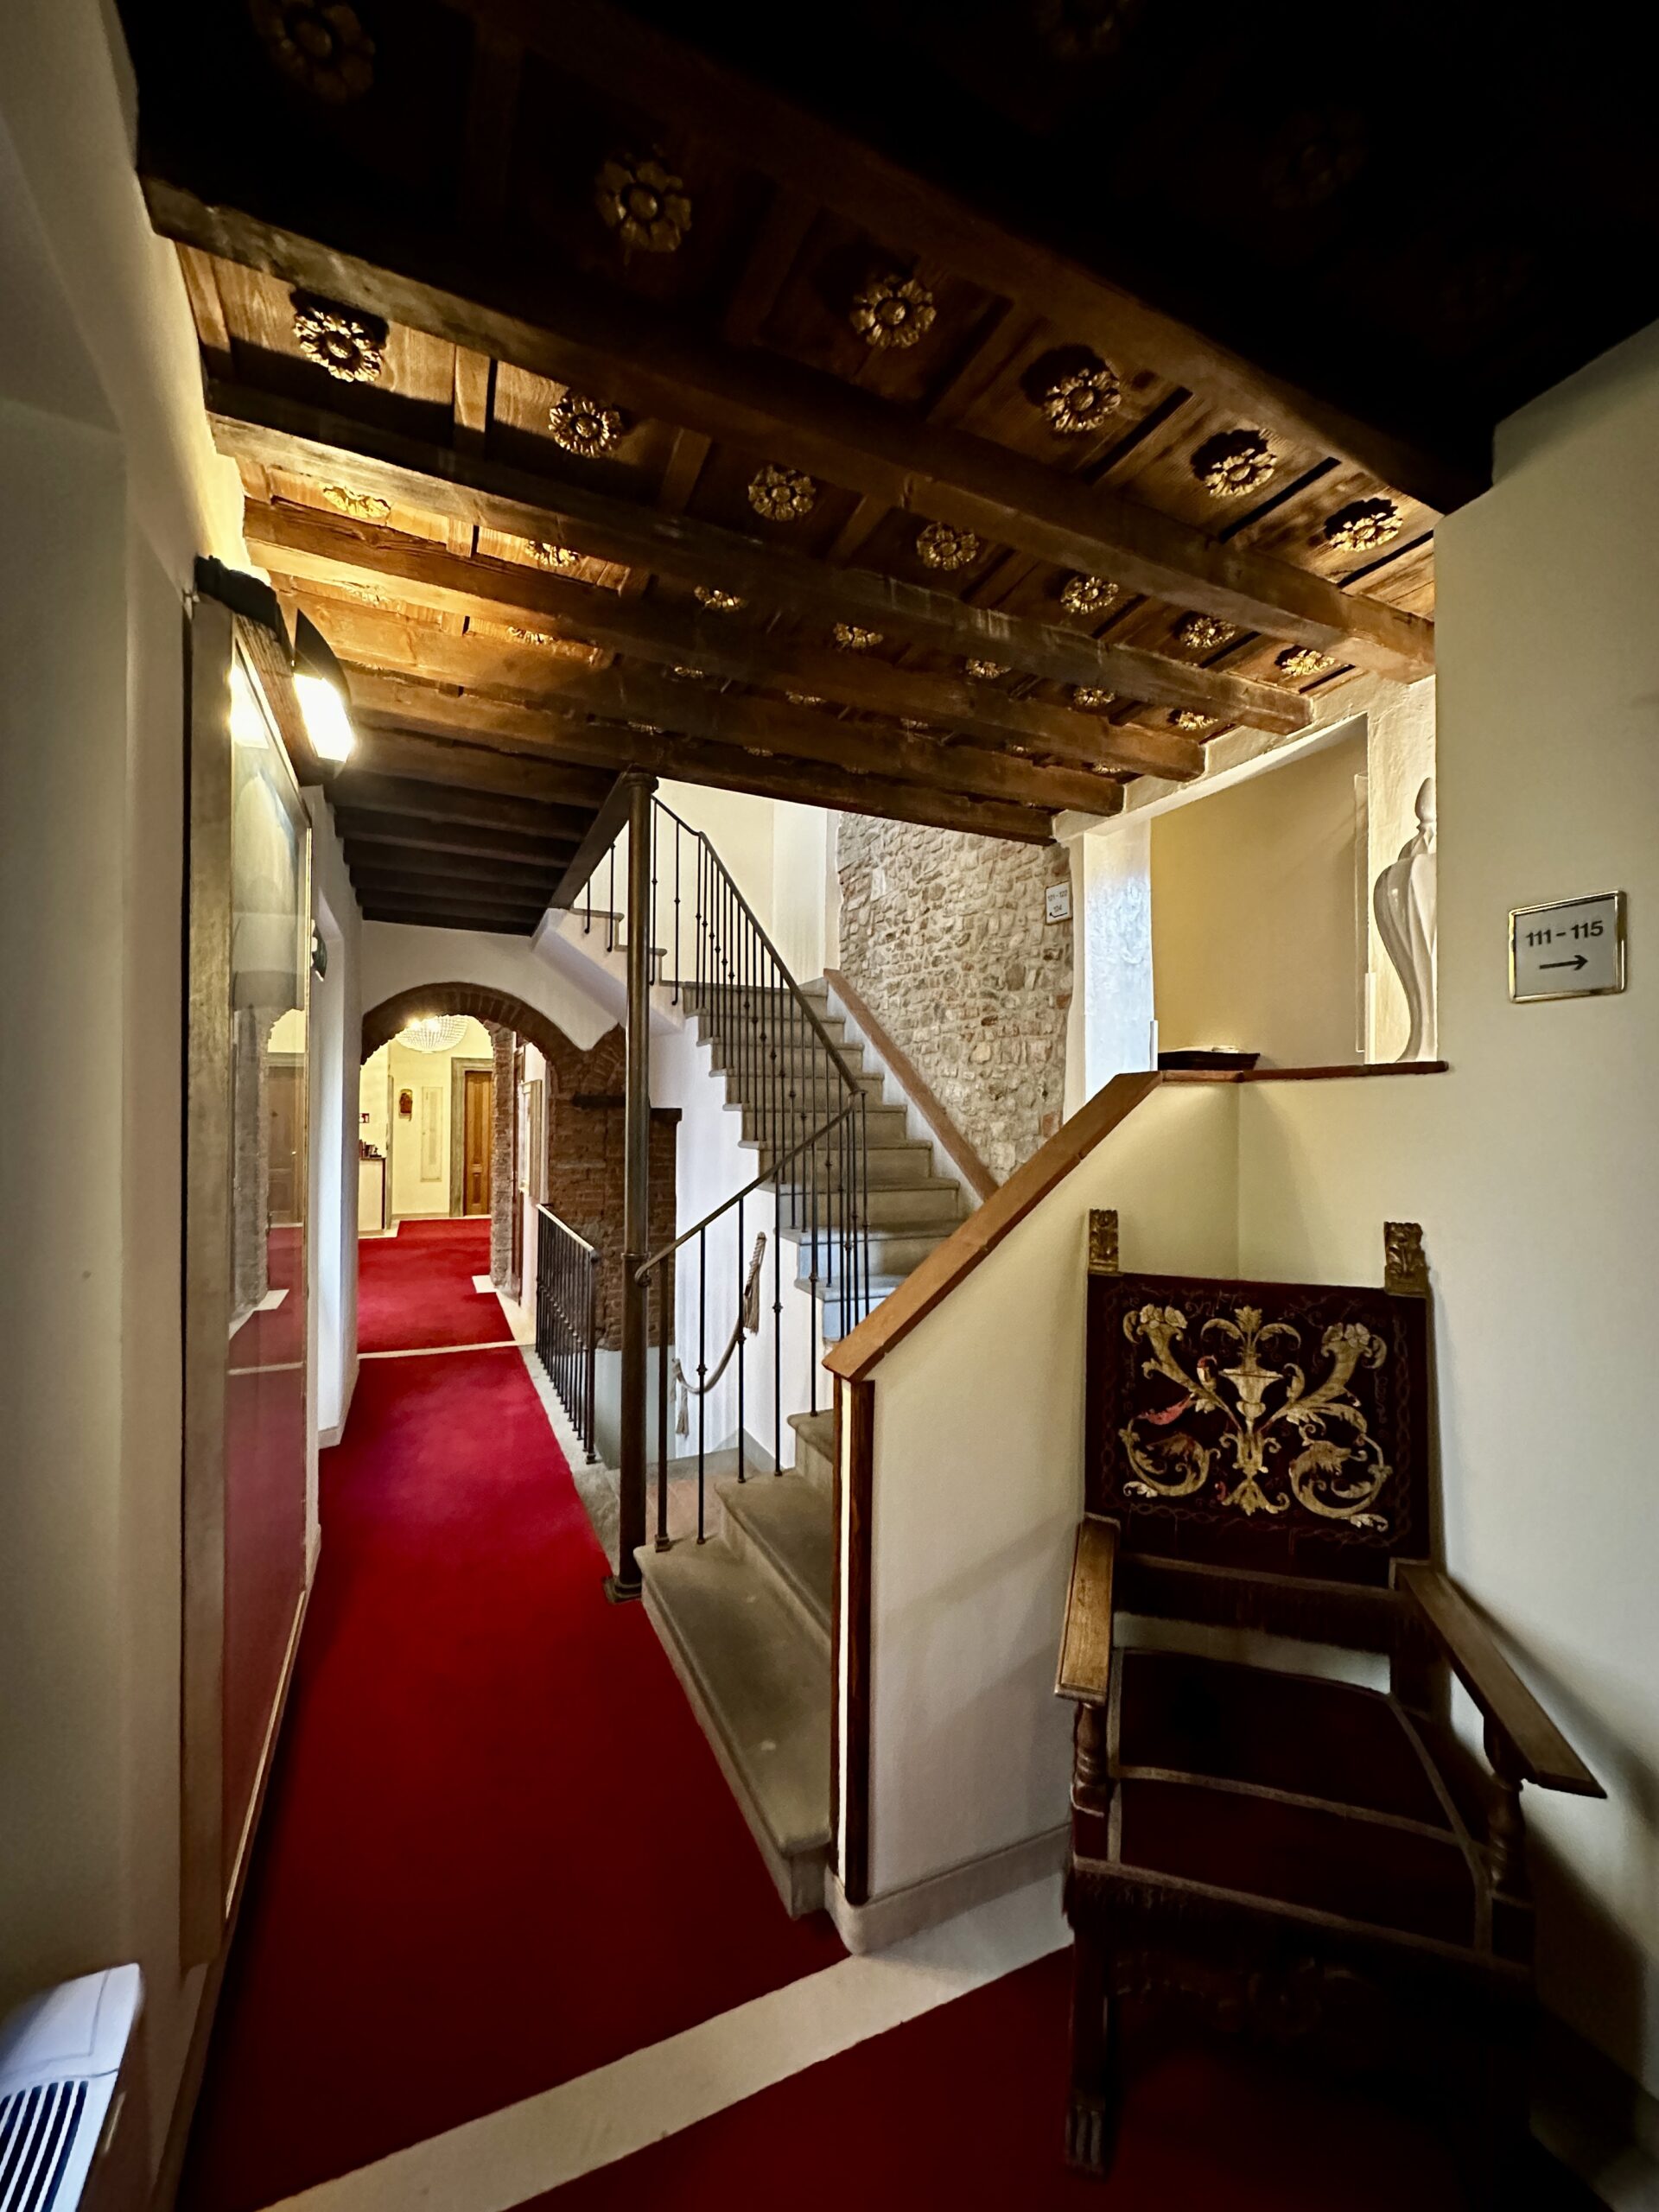 Korytarze hoteliku Il Guelfo Bianco wypełnione są dziełami sztuki, które kolekcjonuje właściciel.